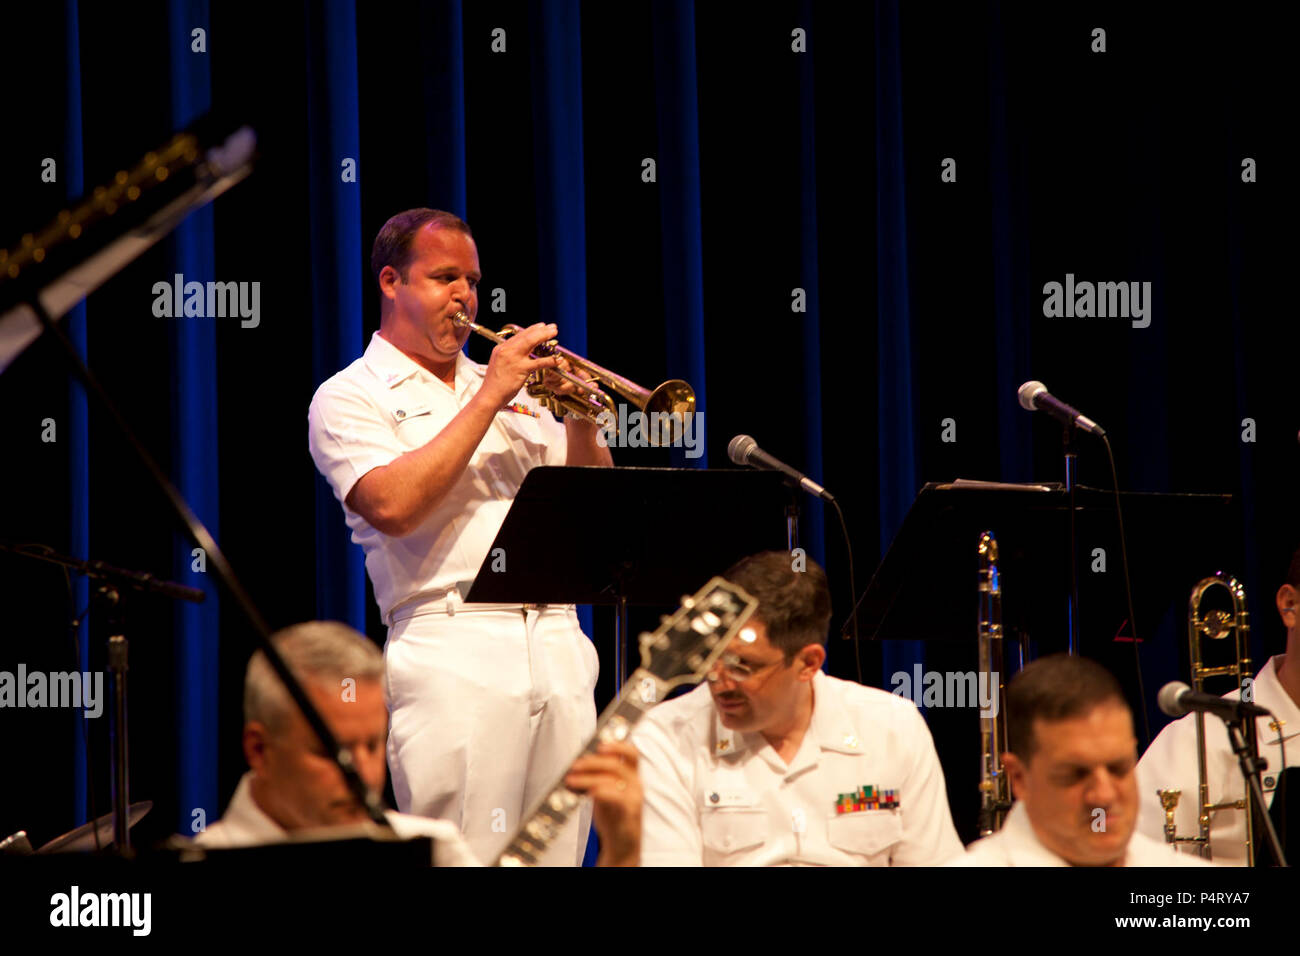 WASHINGTON, DC (6 septembre 2011) MU1 Timothy D. Stanley prend un solo avec The Commodores pendant un concert au Kennedy Center.Le concert est une partie de la série de concerts Stade du millénaire au Kennedy Center. Banque D'Images